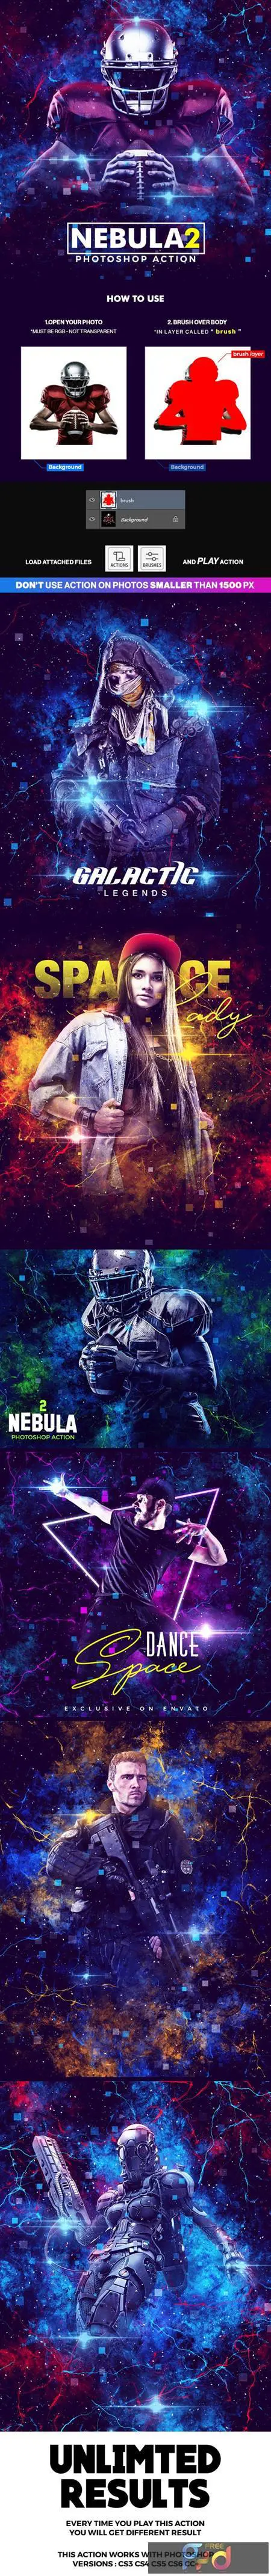 Nebula 2 Photoshop Action